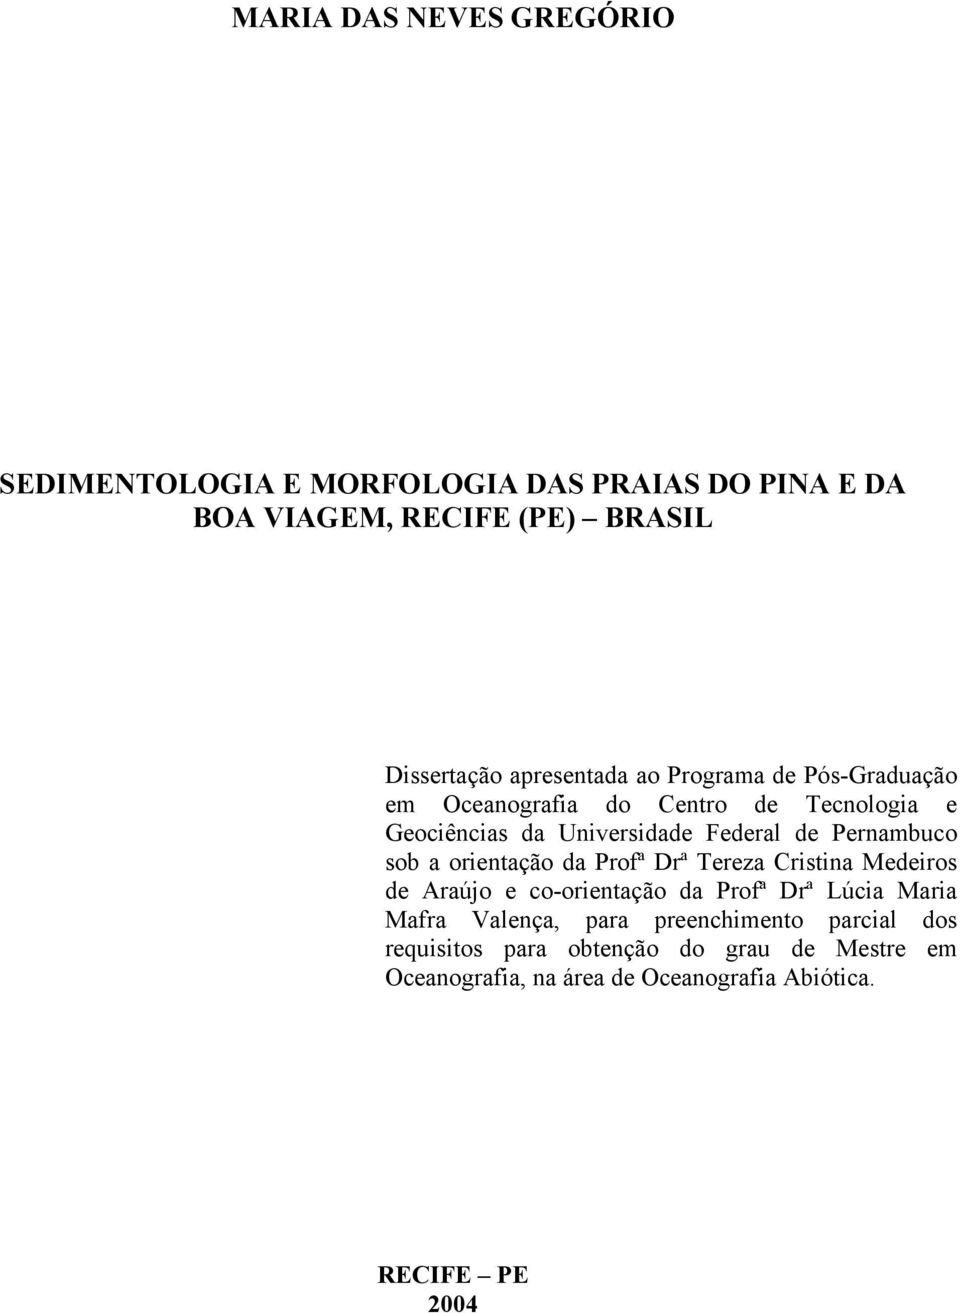 Pernambuco sob a orientação da Profª Drª Tereza Cristina Medeiros de Araújo e co-orientação da Profª Drª Lúcia Maria Mafra